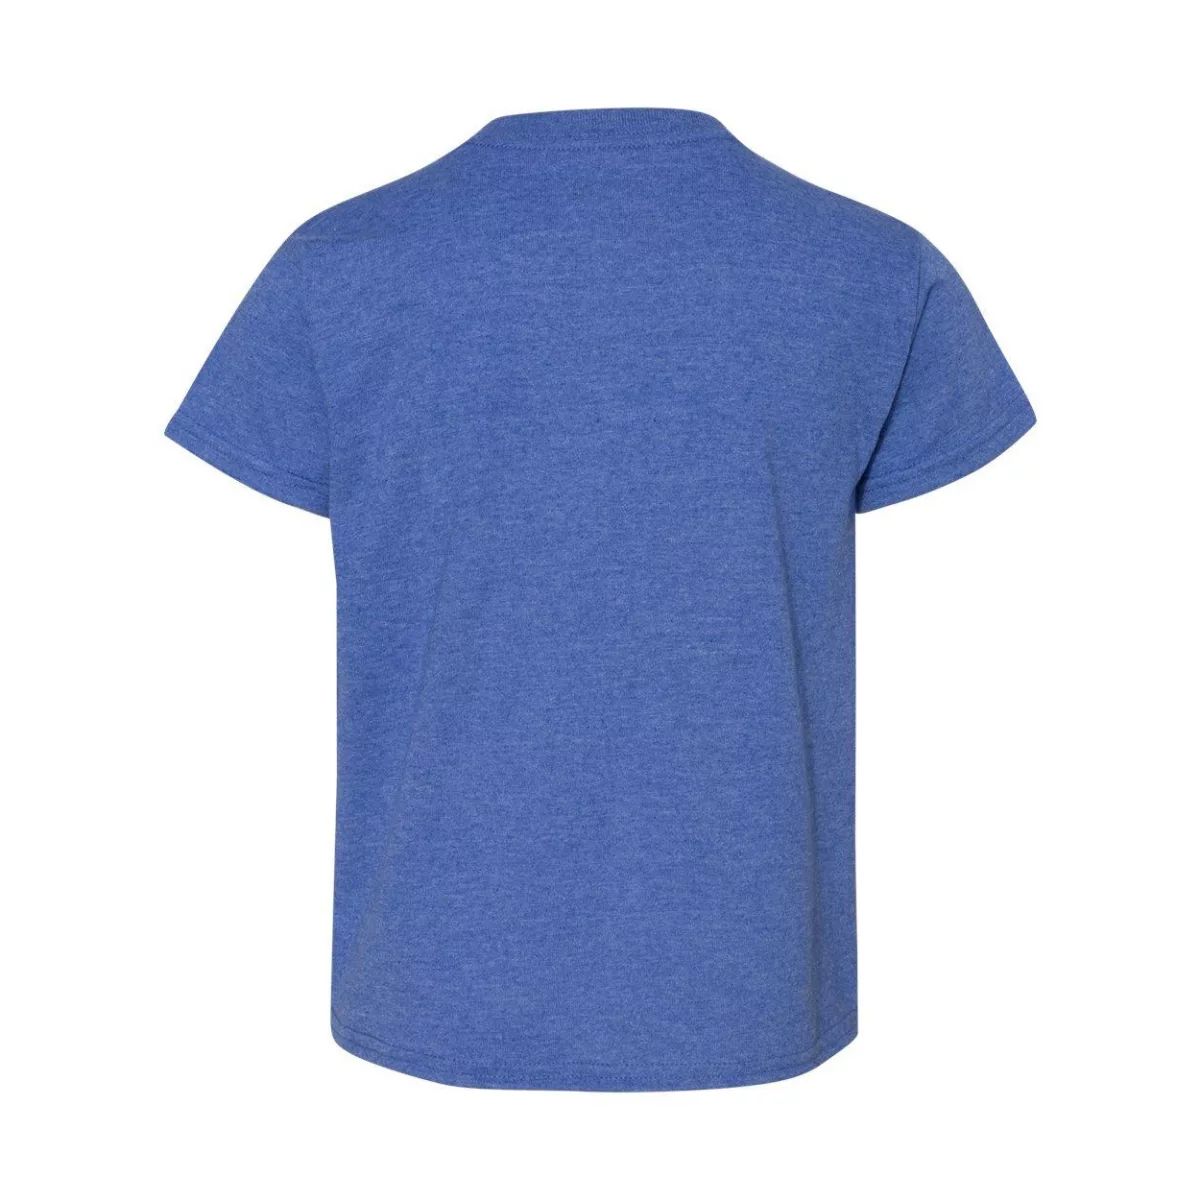 Молодёжная футболка DryBlend Gildan, светло-синий